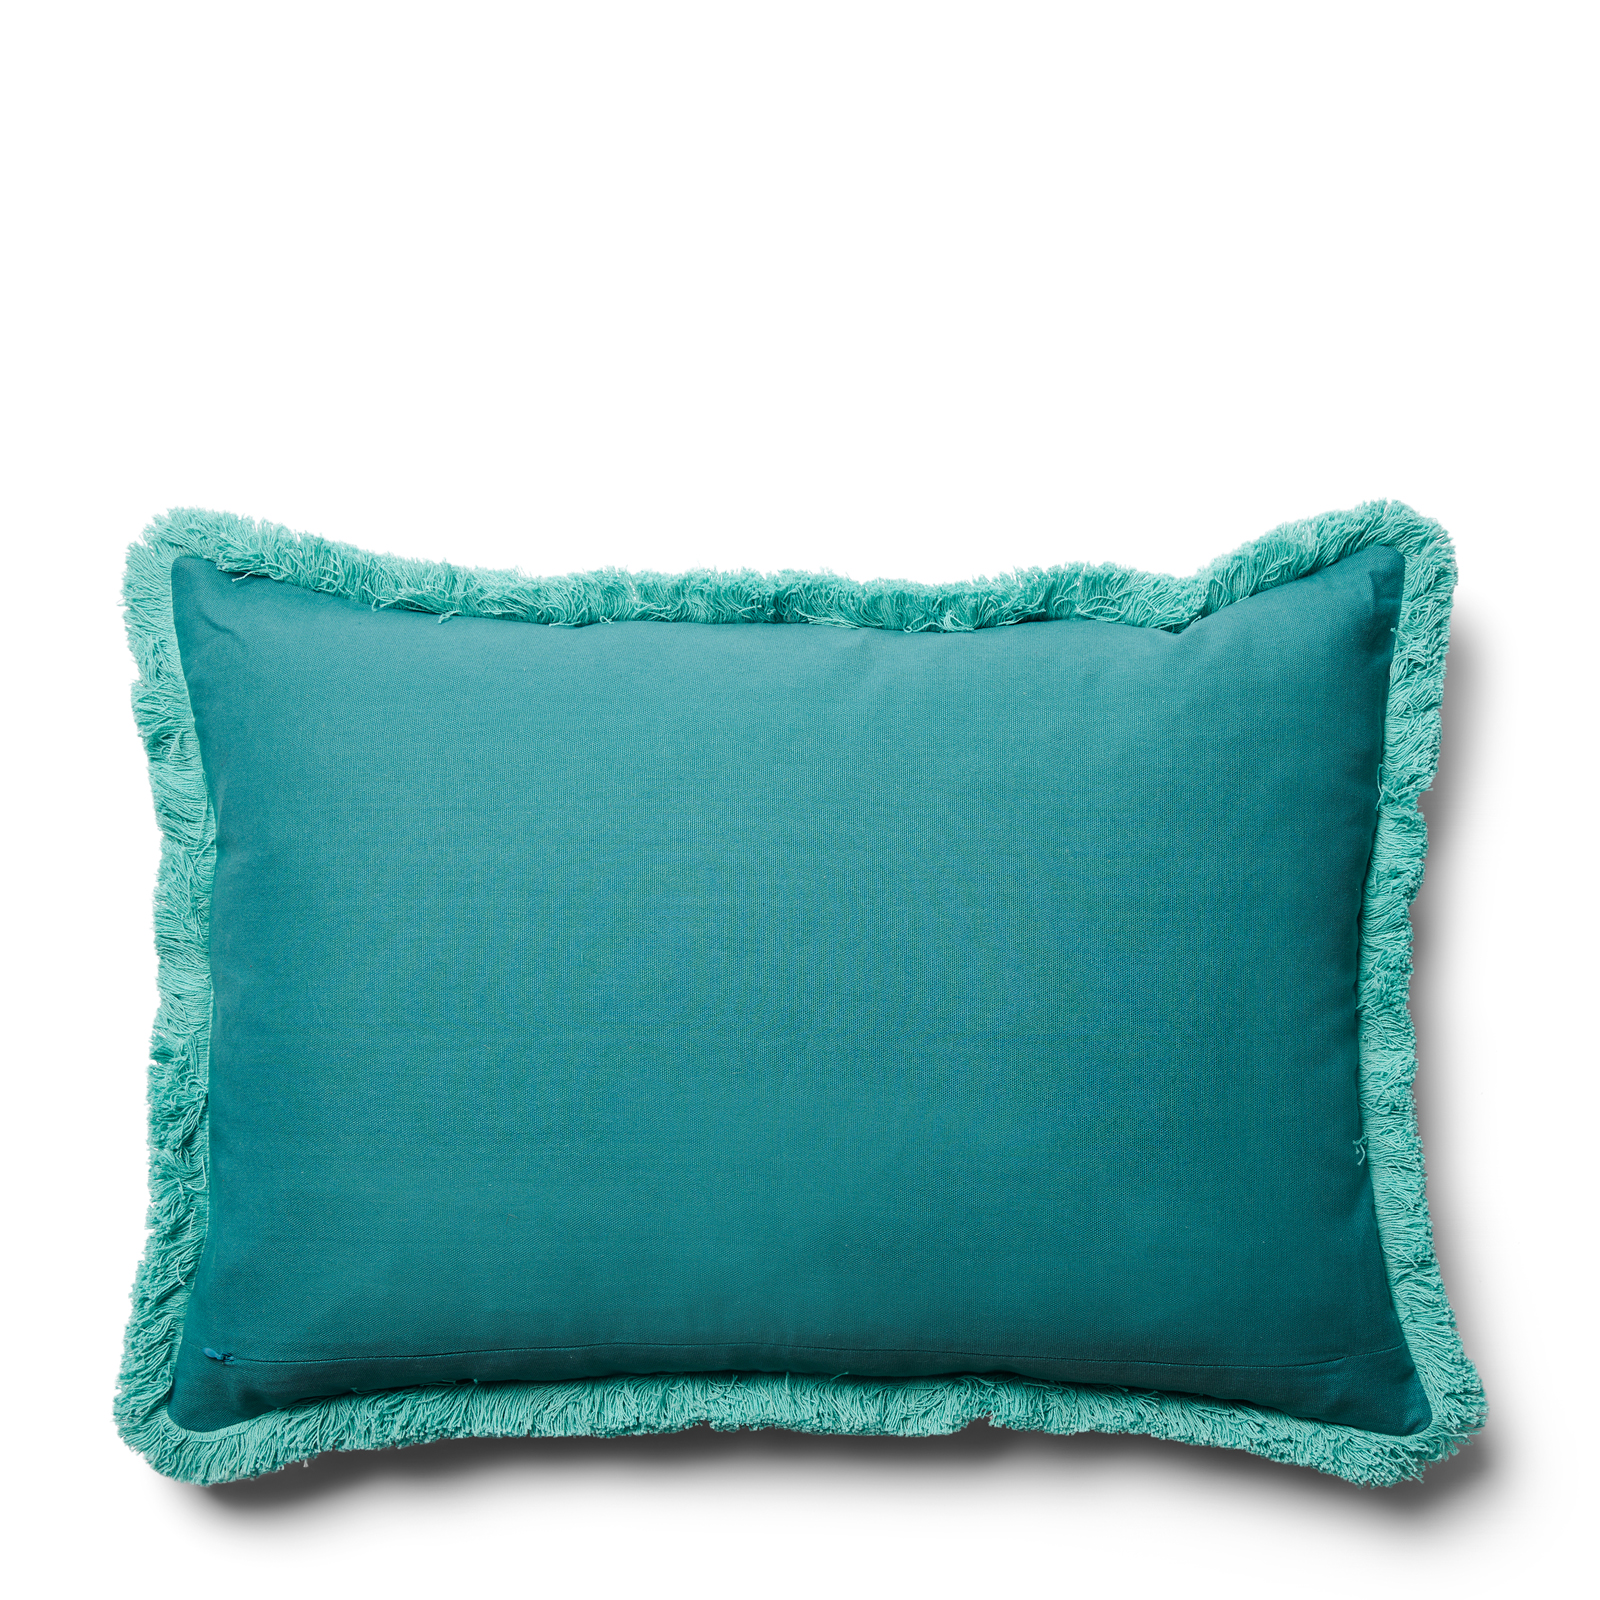 RM Salinas Pillow Cover 65x45